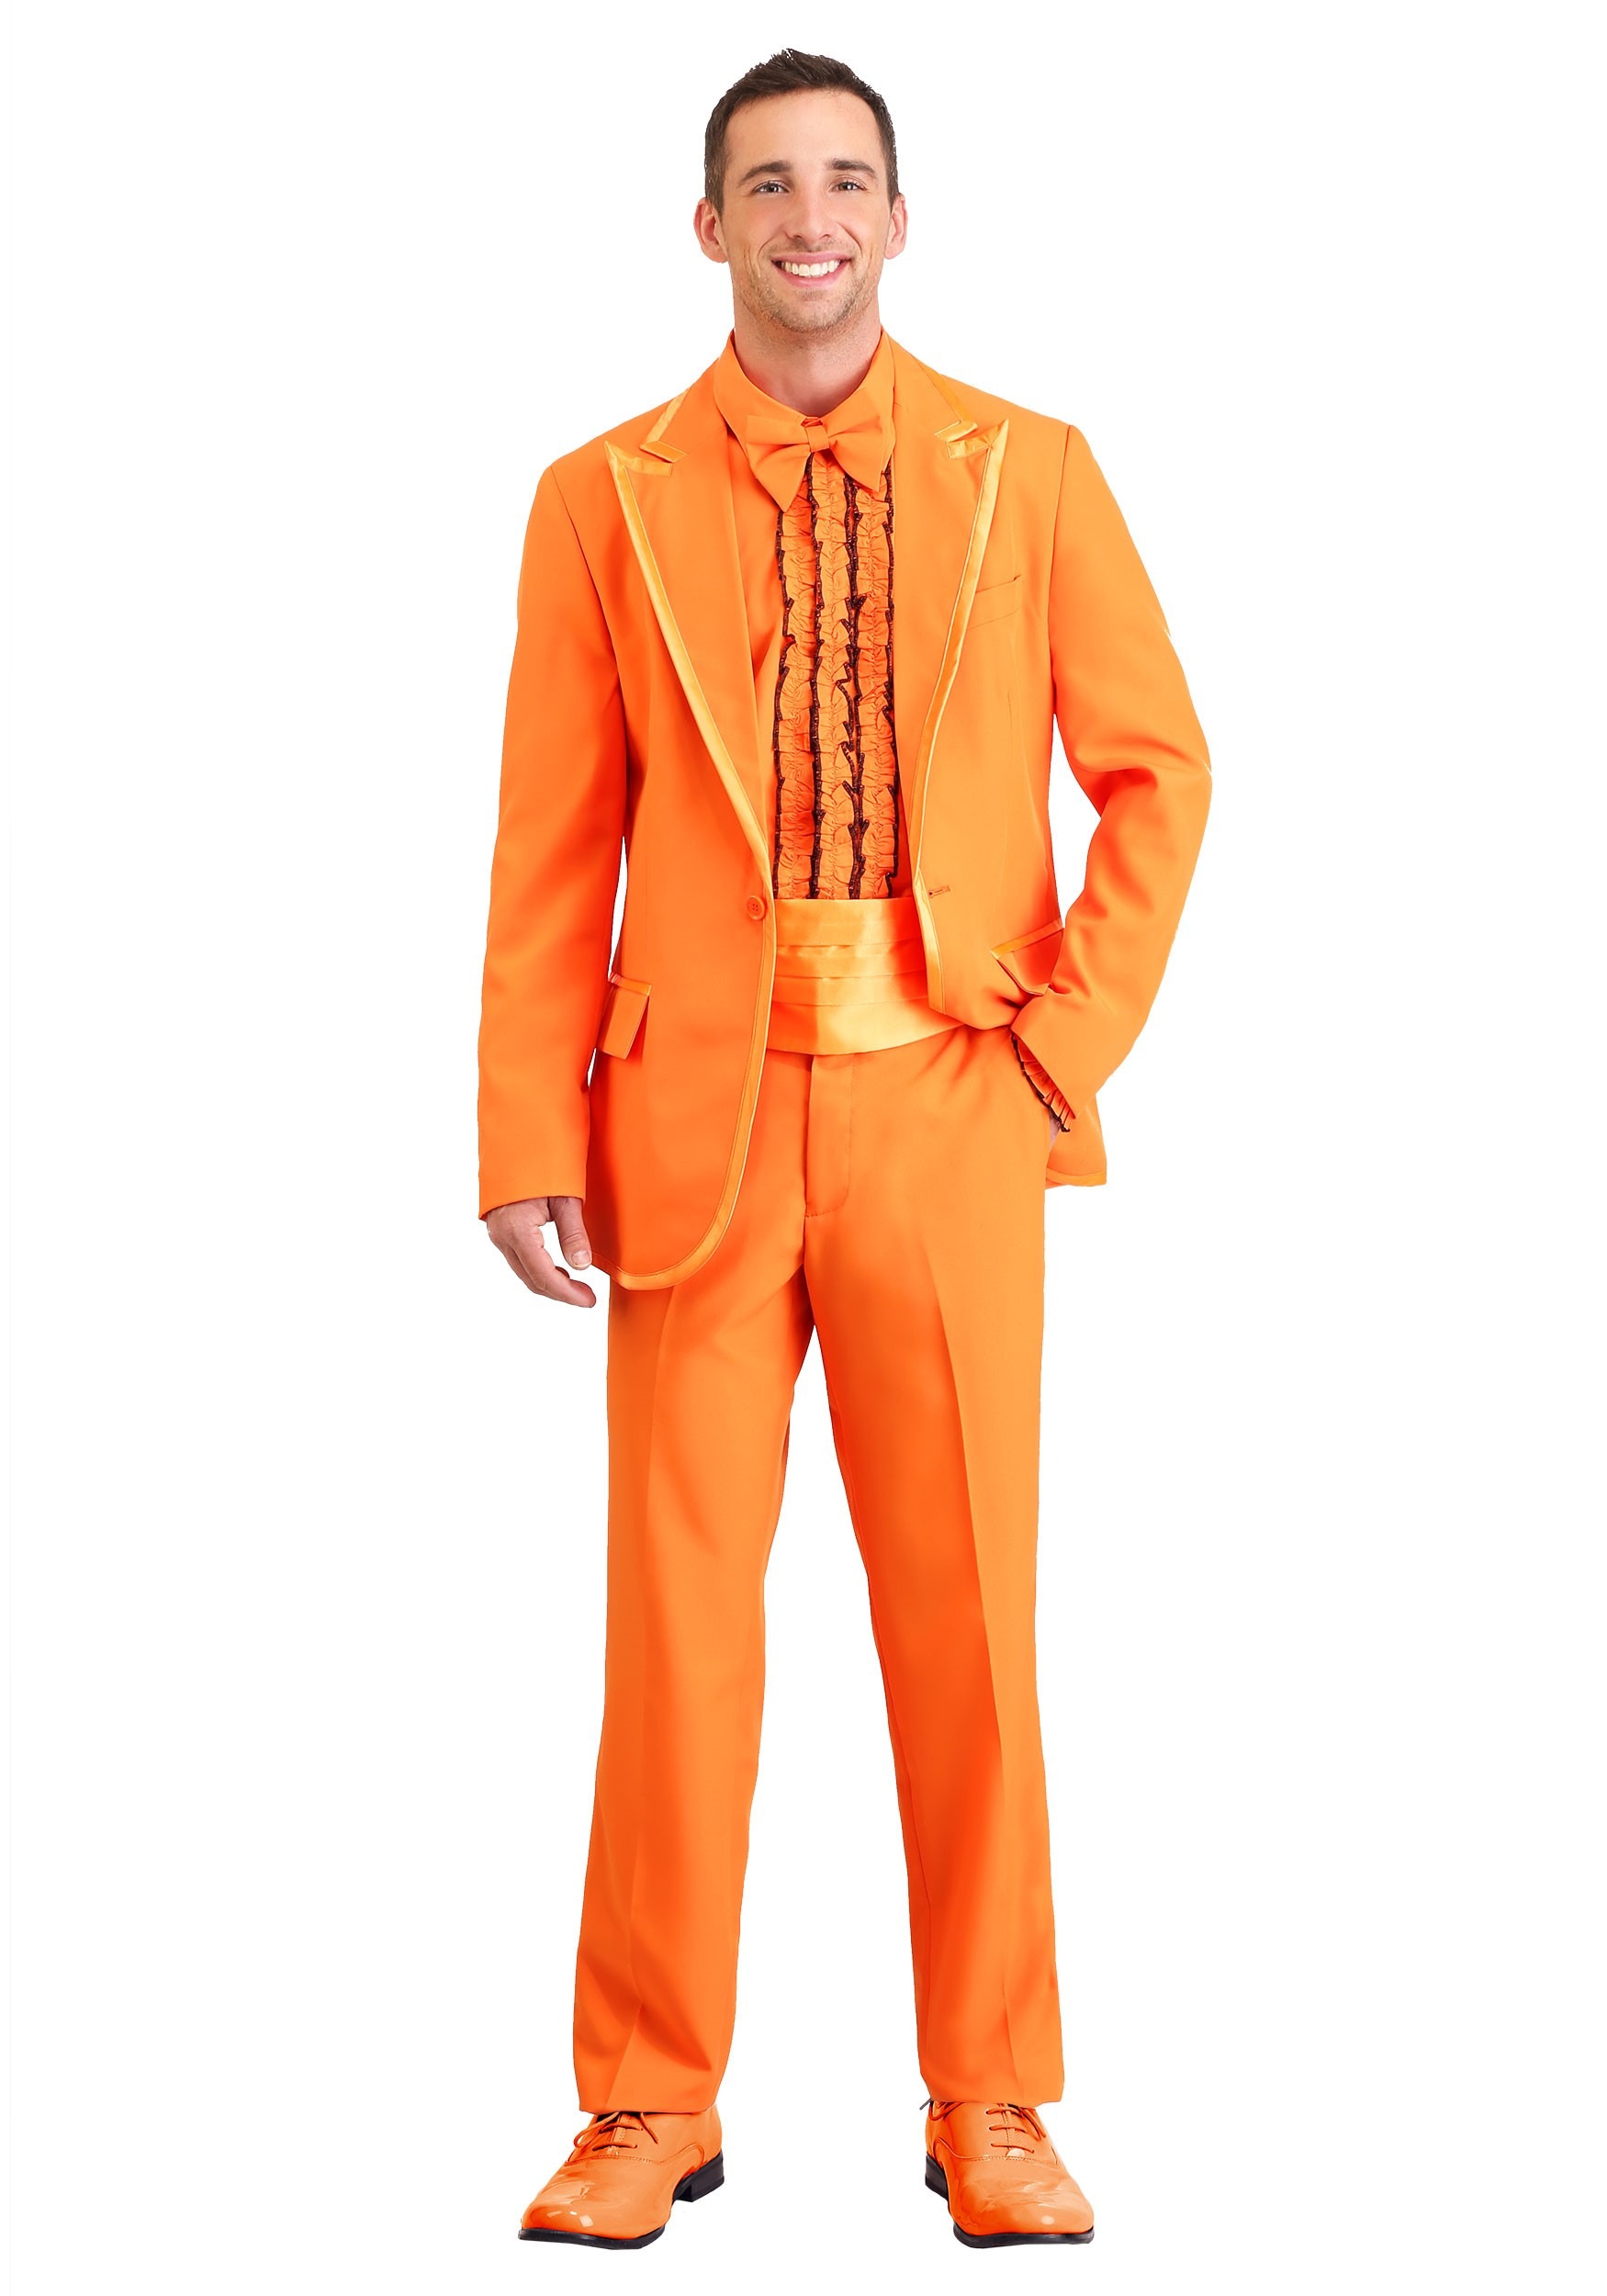 Plus Size Orange Tuxedo Costume For Men